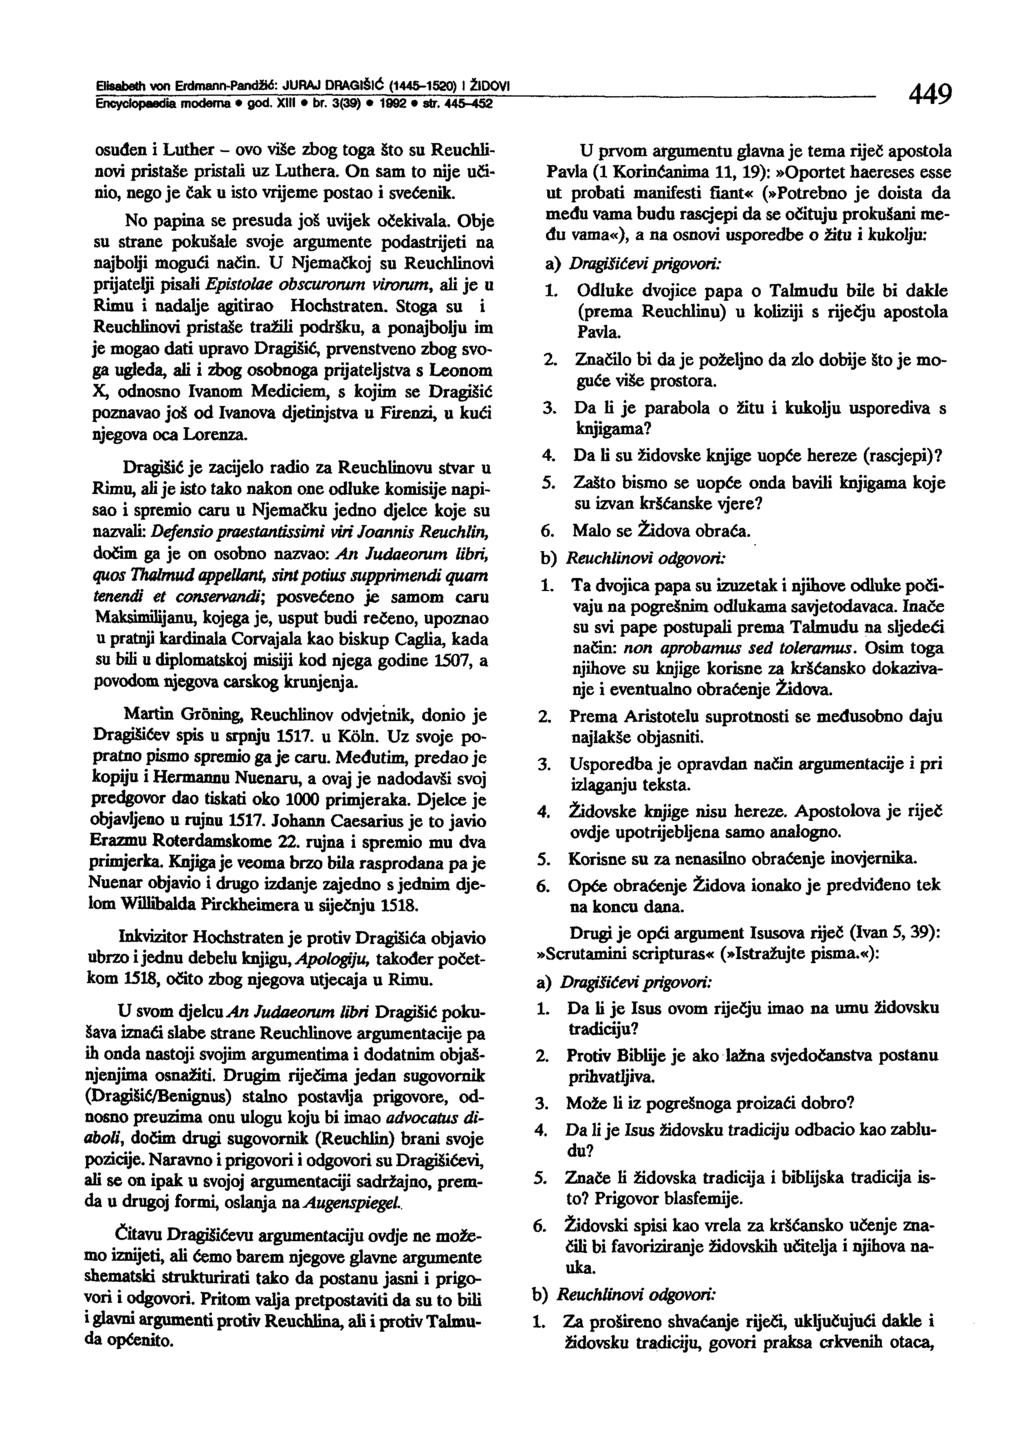 Bisabeth von Erdmann-Pand!IC: JURAJ DRAGISIC (144&-1520) t l!dovi Encyclopaedia modema god. XIII br. 3(39) 1992 str.